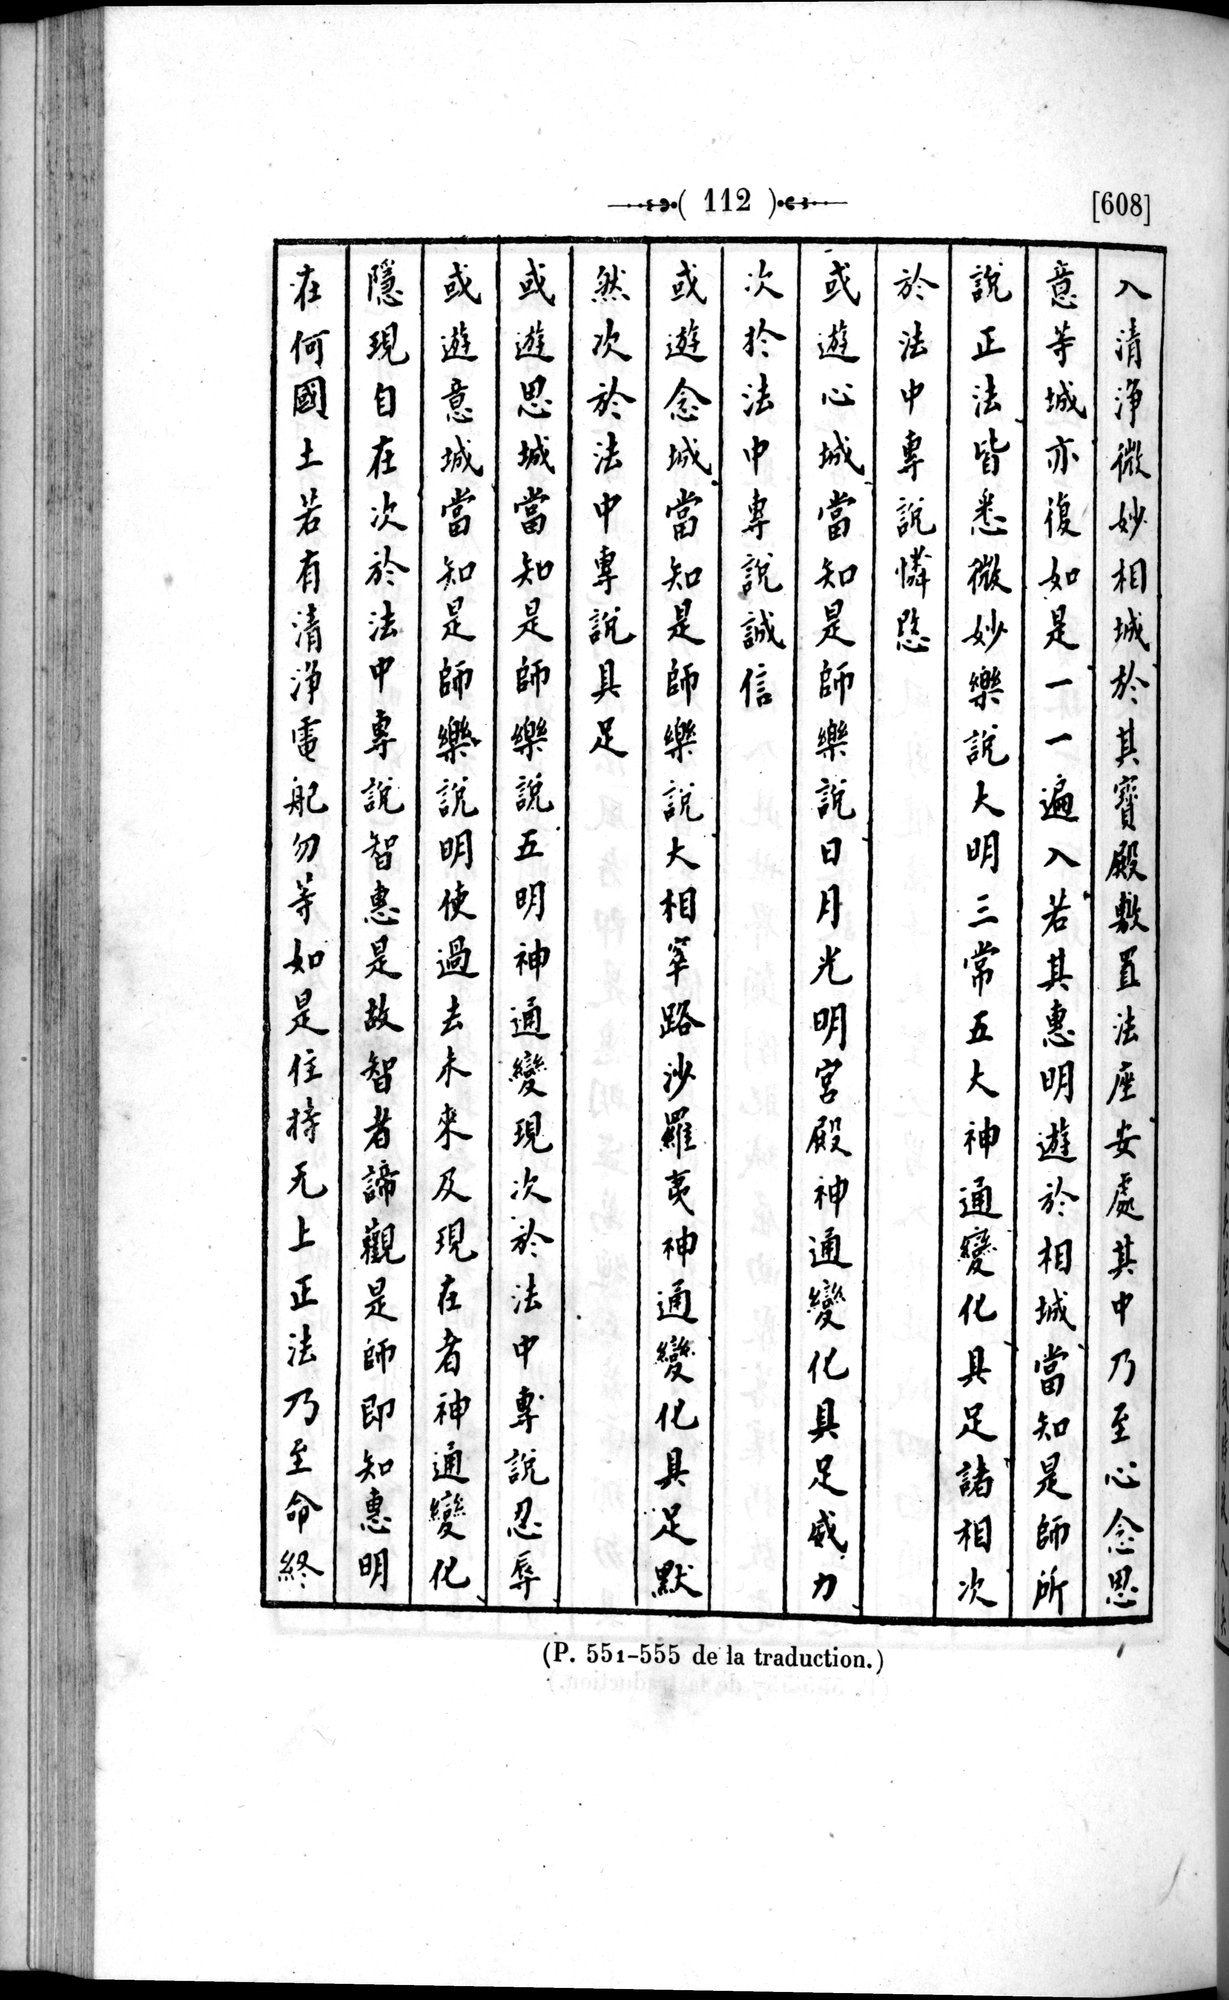 Un traité manichéen retrouvé en Chine : vol.1 / Page 122 (Grayscale High Resolution Image)